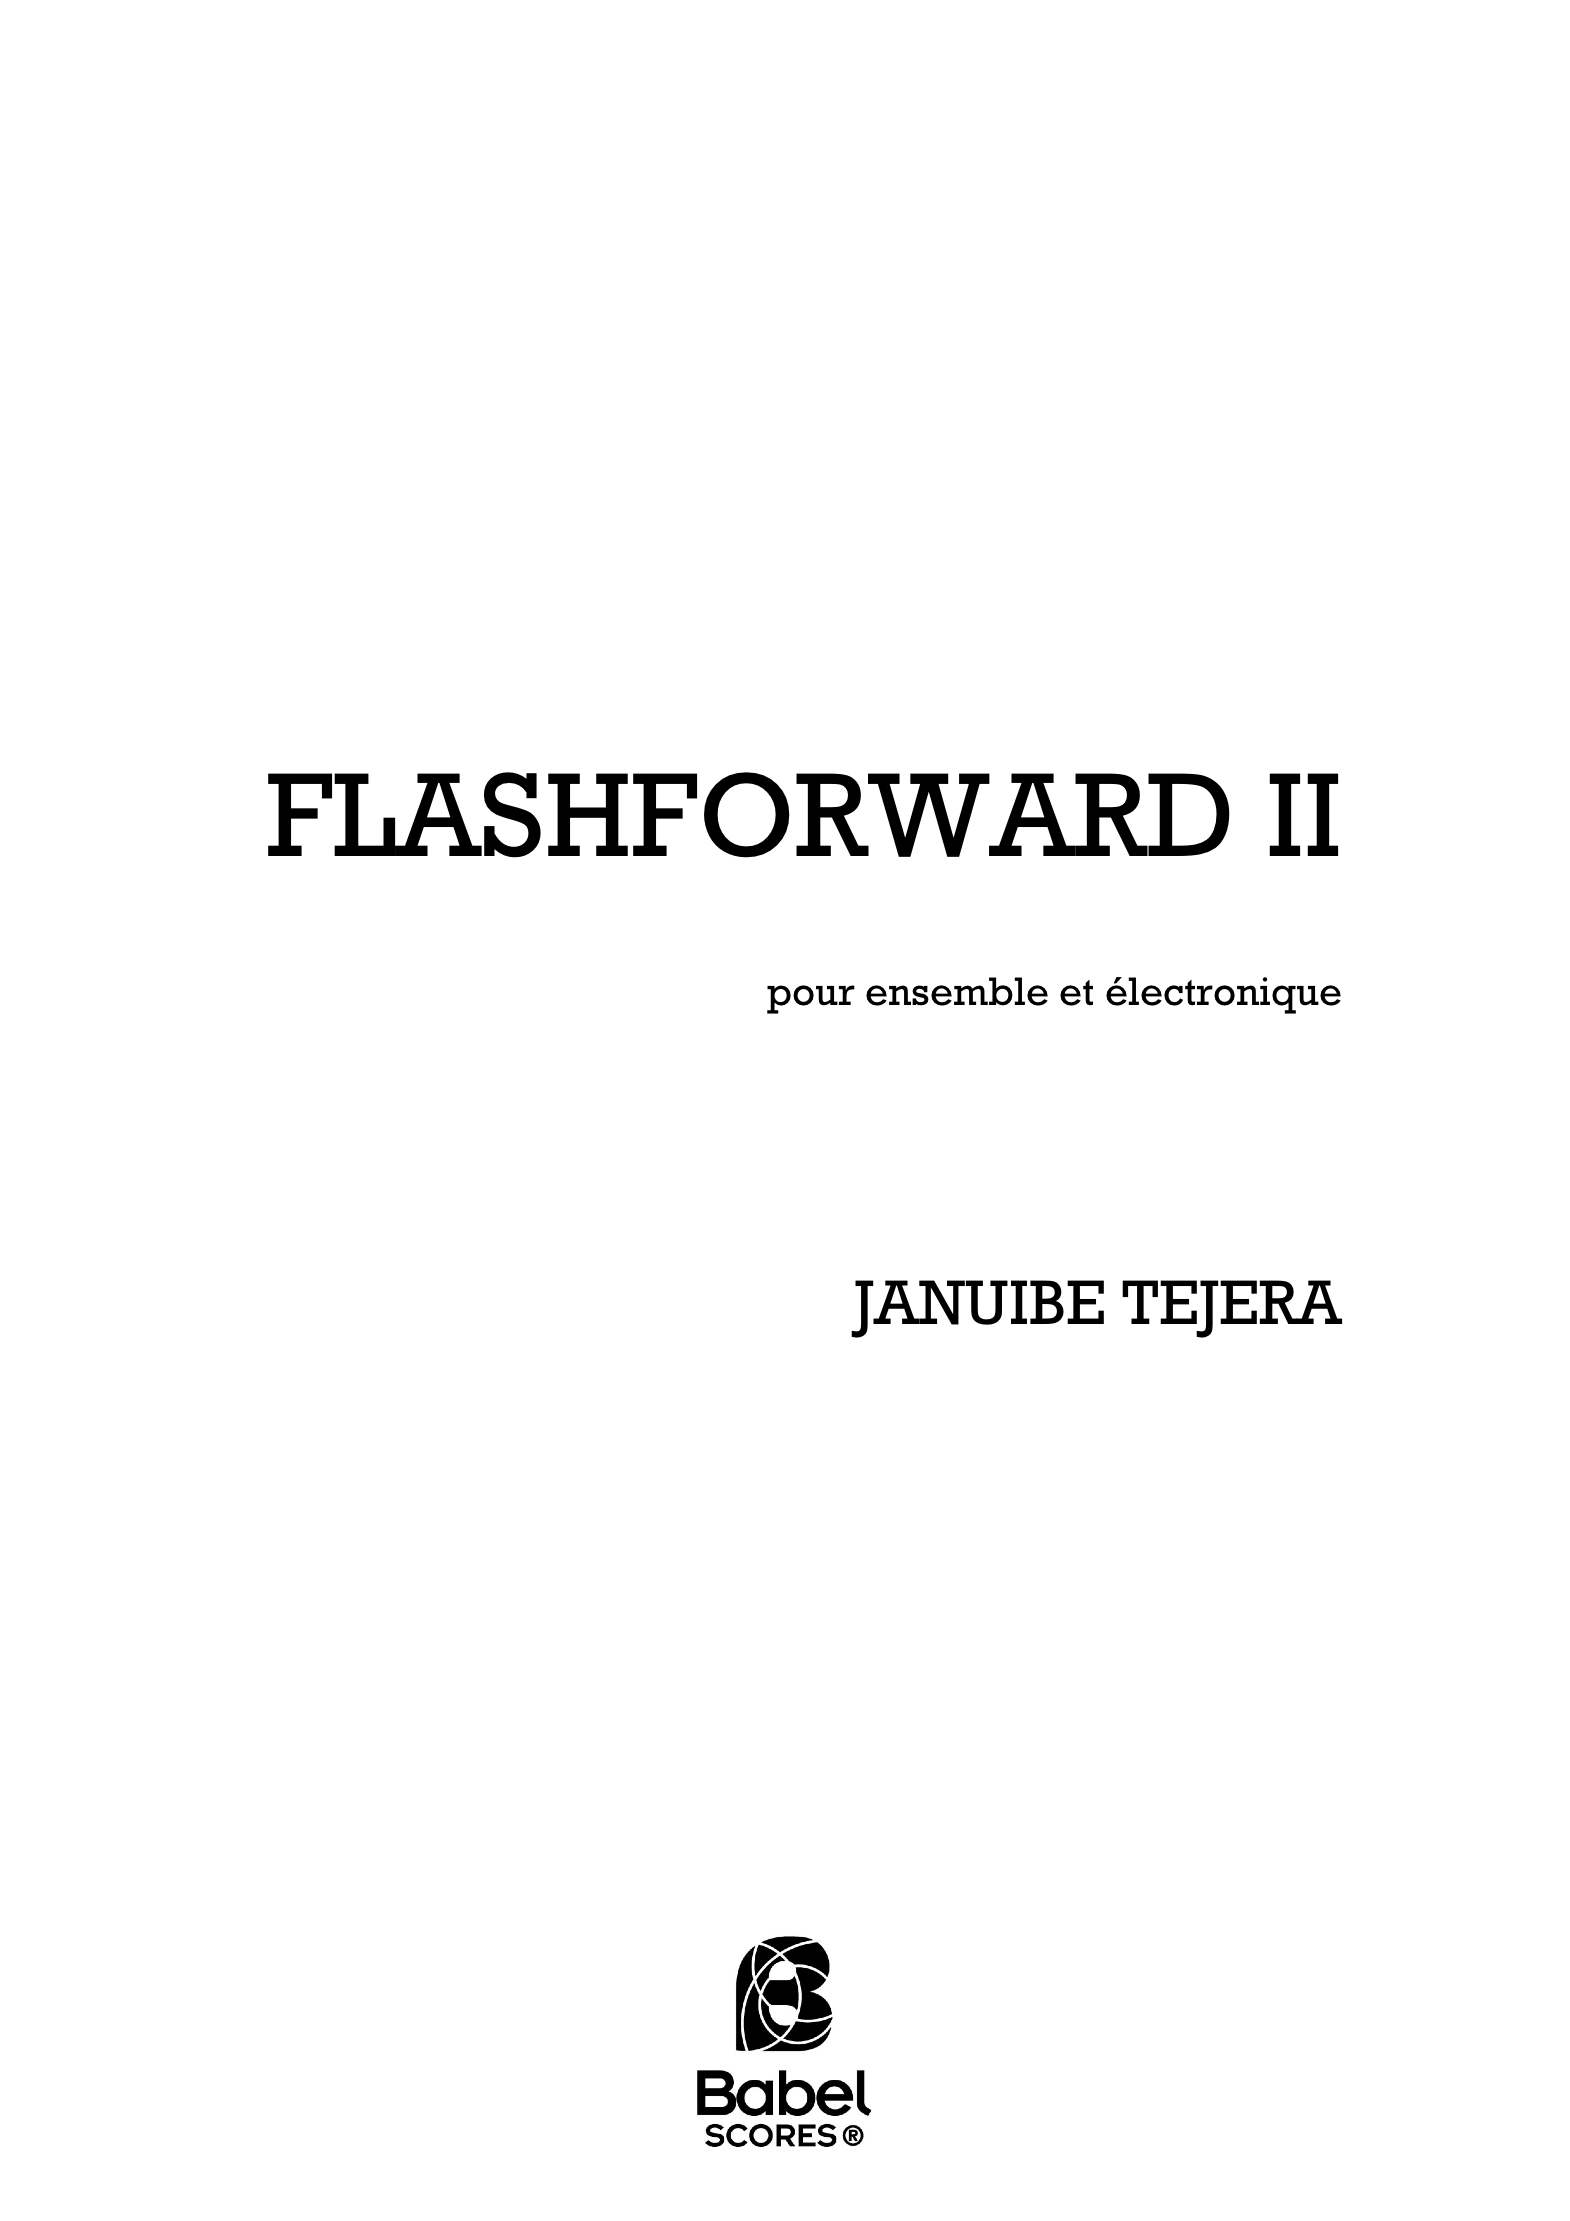 Flashforward A4 z